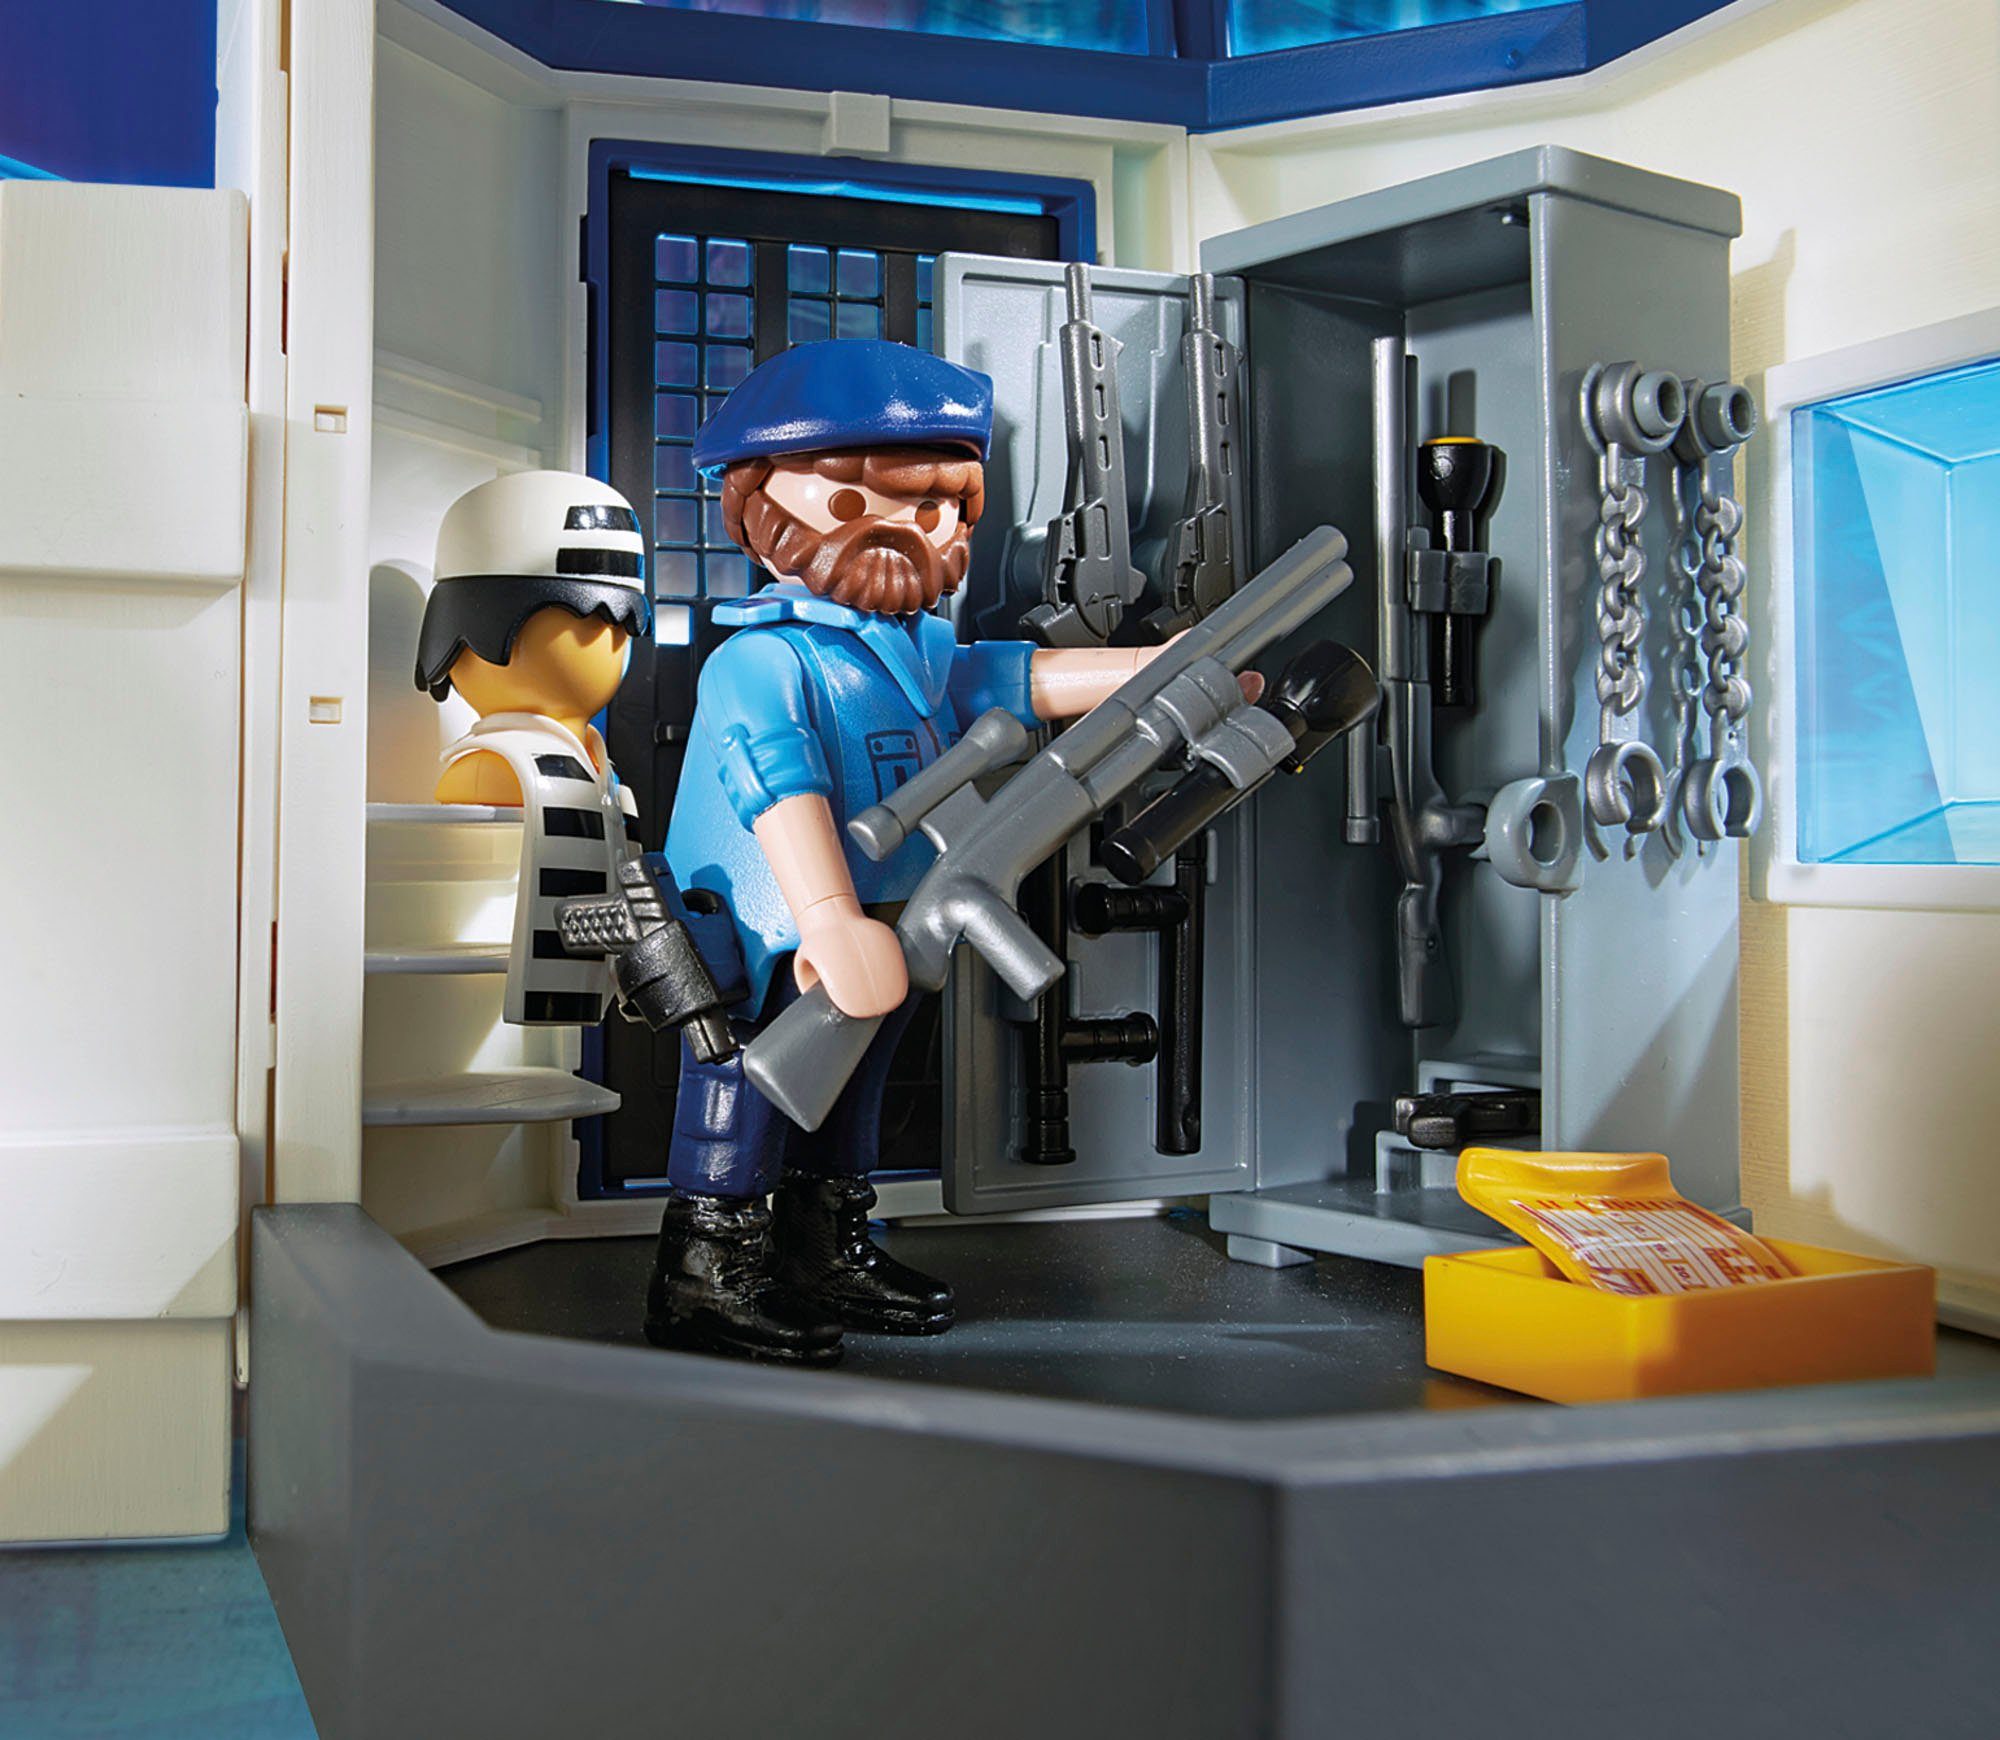 Playmobil® Constructie-speelset Politiebureau met gevangenis (6872), City Action Made in (256 stuks) in winkel | OTTO